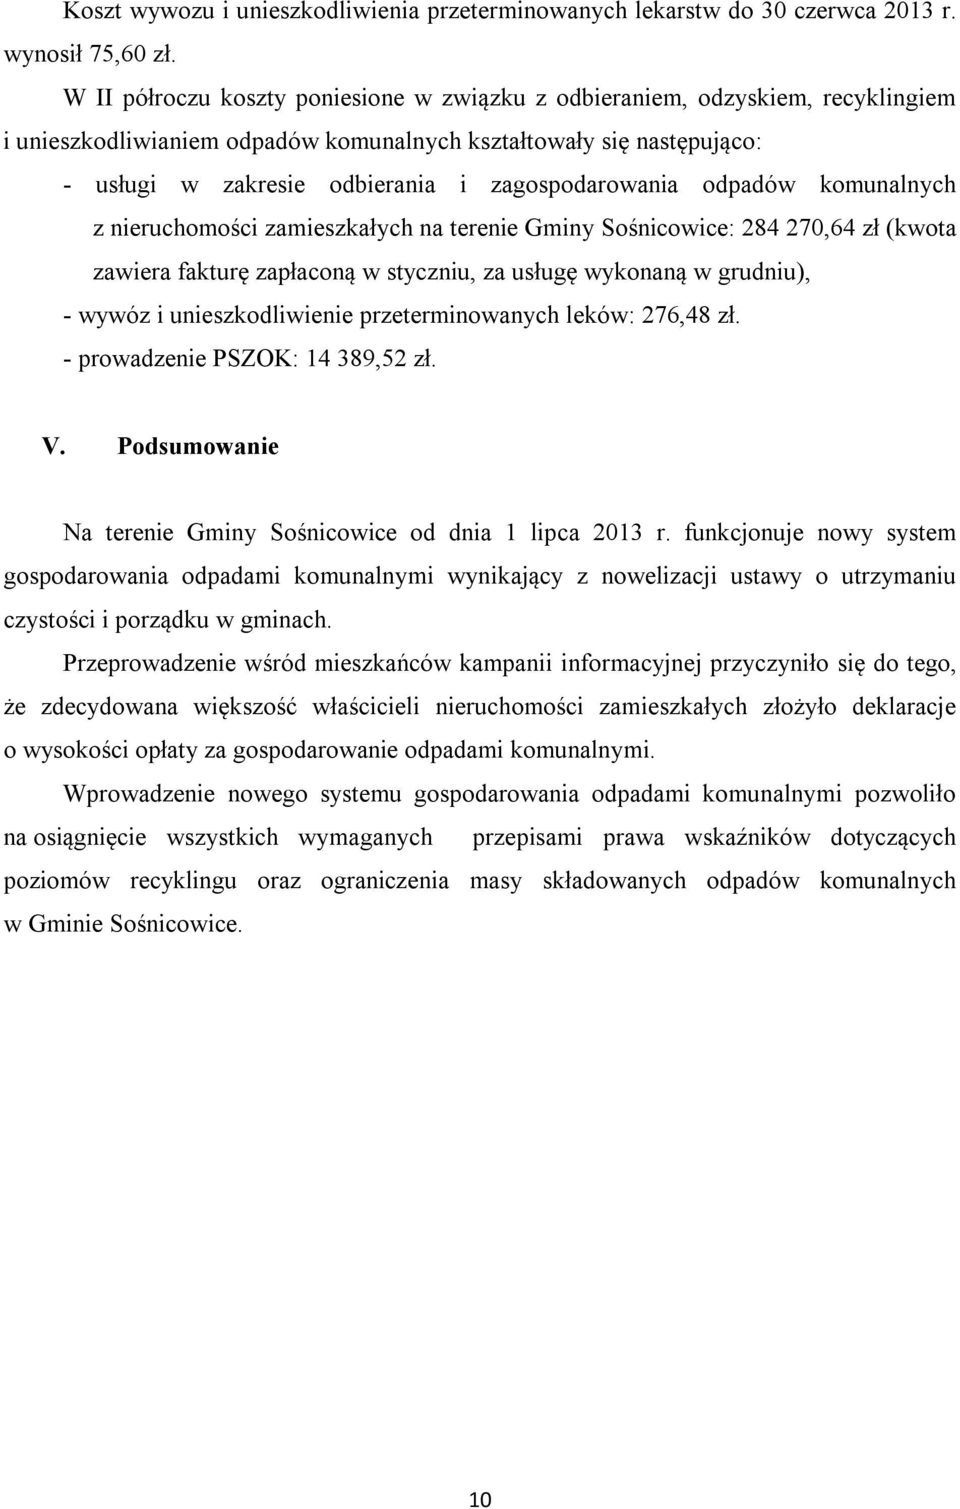 zagospodarowania odpadów komunalnych z nieruchomości zamieszkałych na terenie Gminy Sośnicowice: 284 270,64 zł (kwota zawiera fakturę zapłaconą w styczniu, za usługę wykonaną w grudniu), - wywóz i